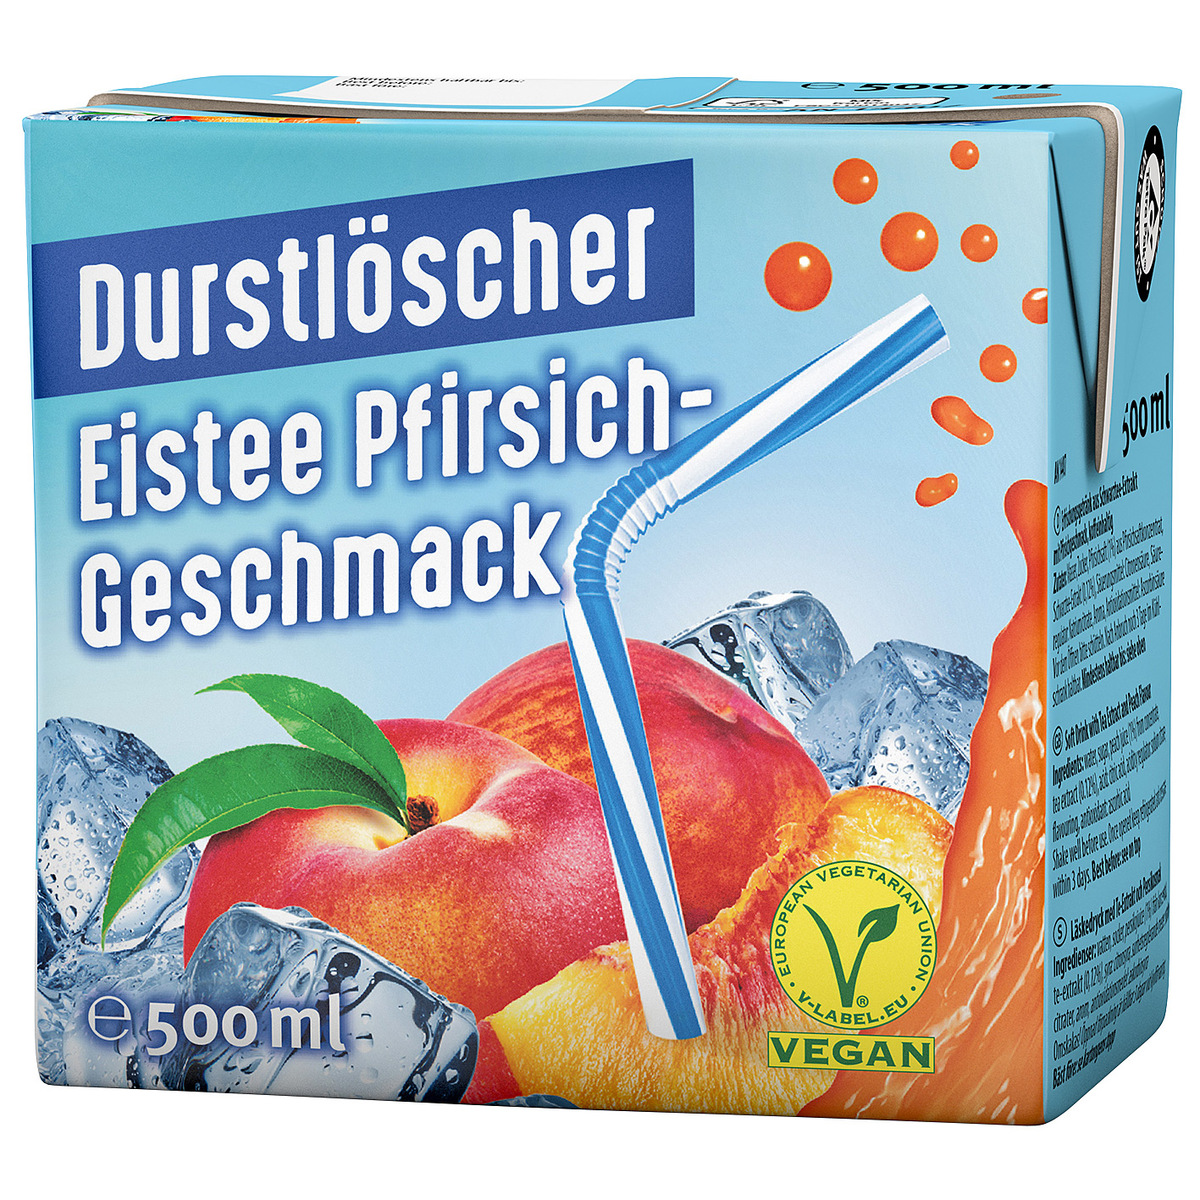 Durstlöscher Eistee Pfirsich-Geschmack 12 x 0,5l